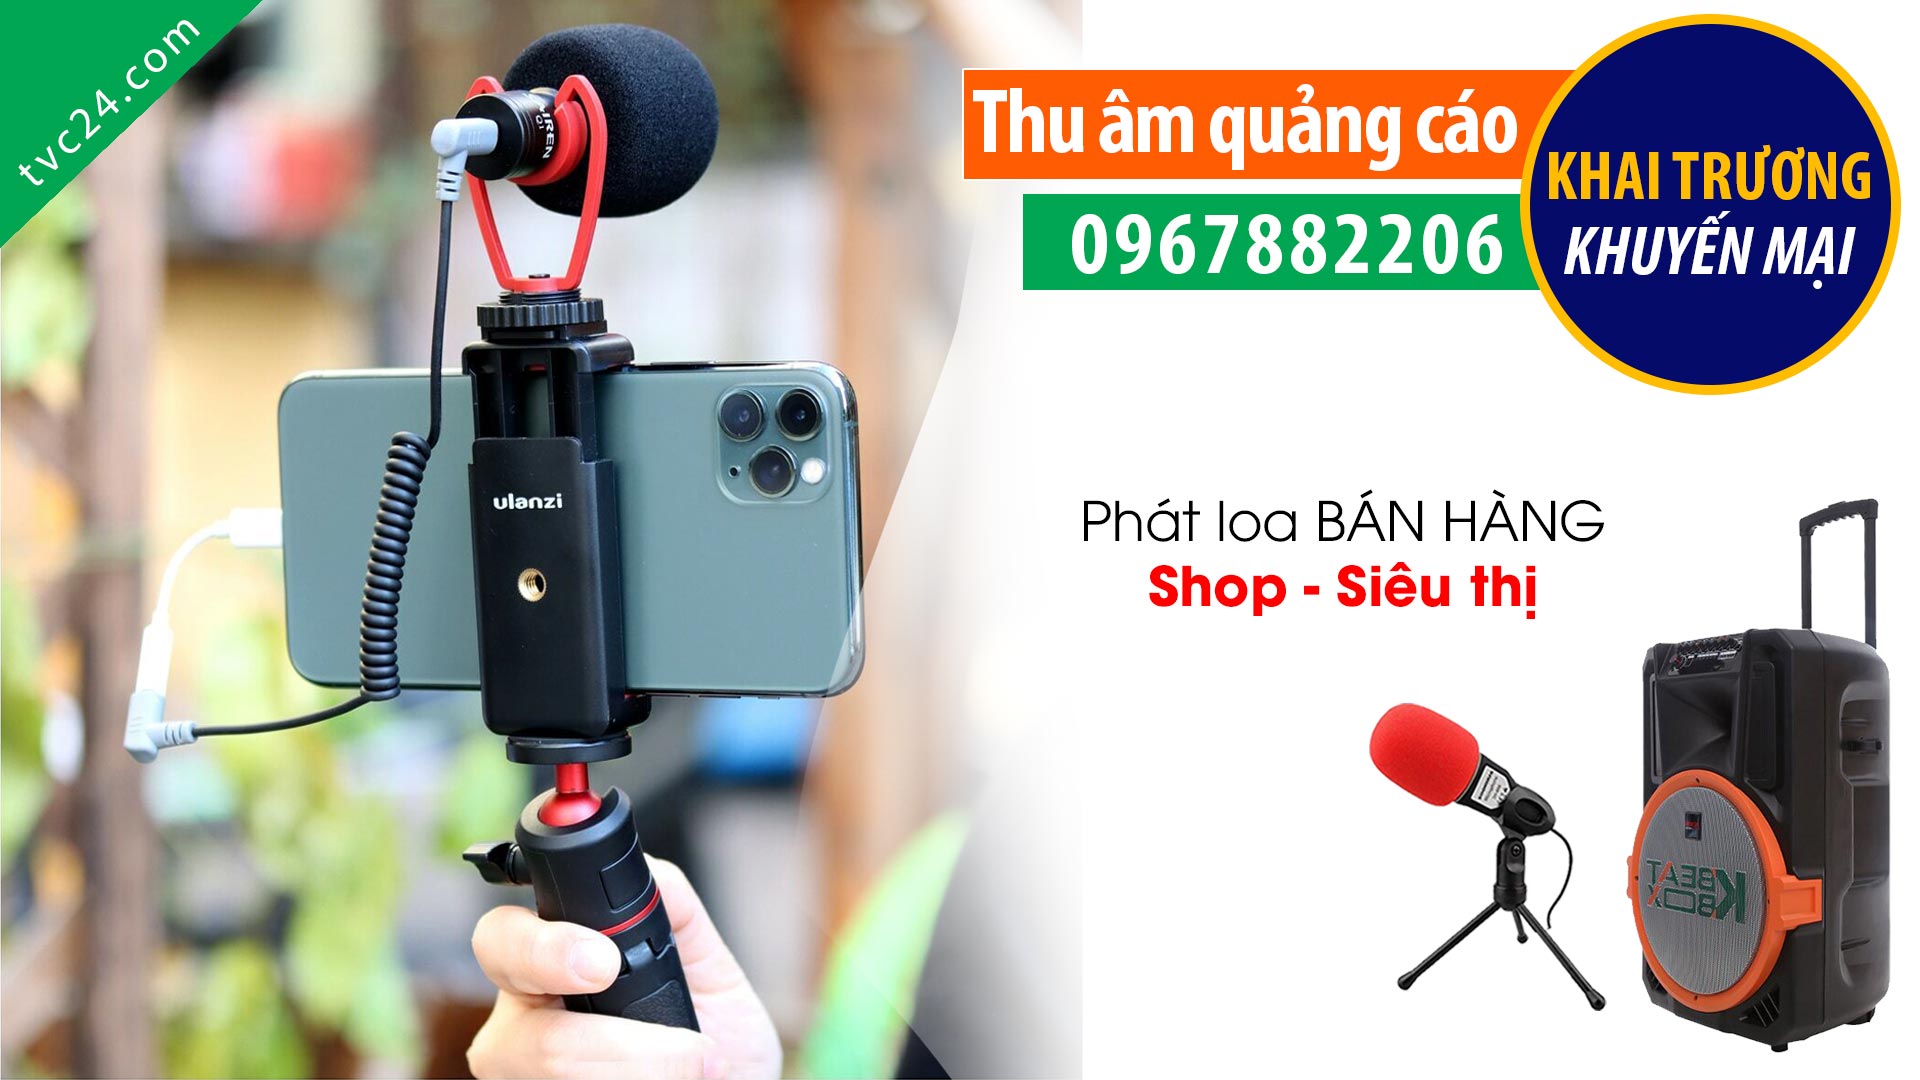  Thu âm quảng cáo cửa hàng điện thoại di động Thái Phương mobile